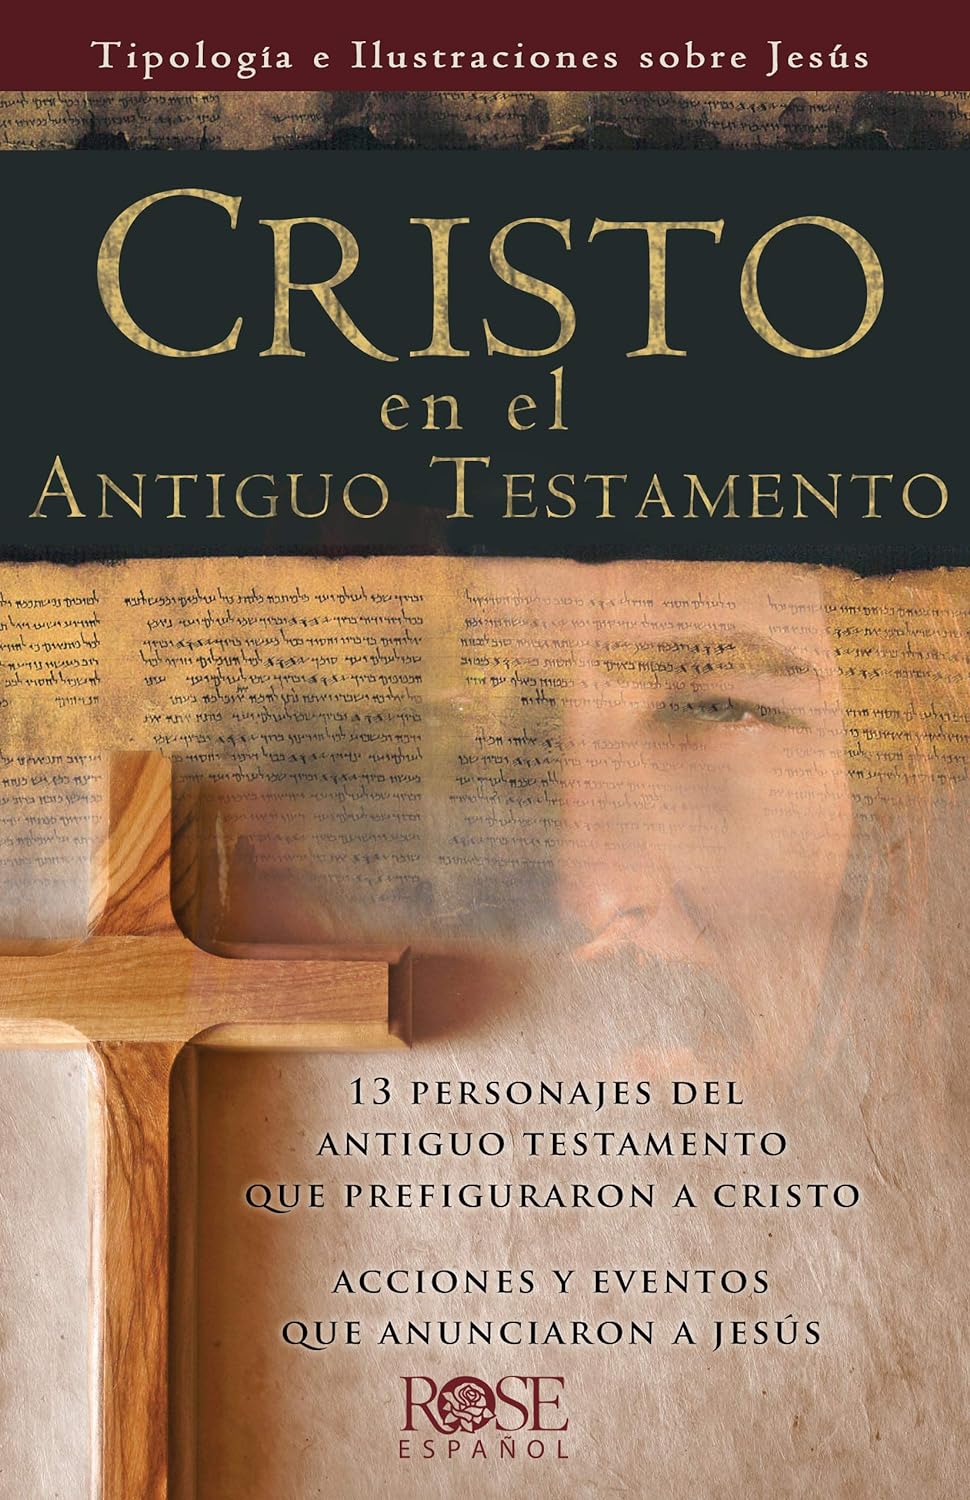 Cristo en el Antiguo Testamento: Tipología e Ilustraciones sobre Jesús (Spanish Edition)